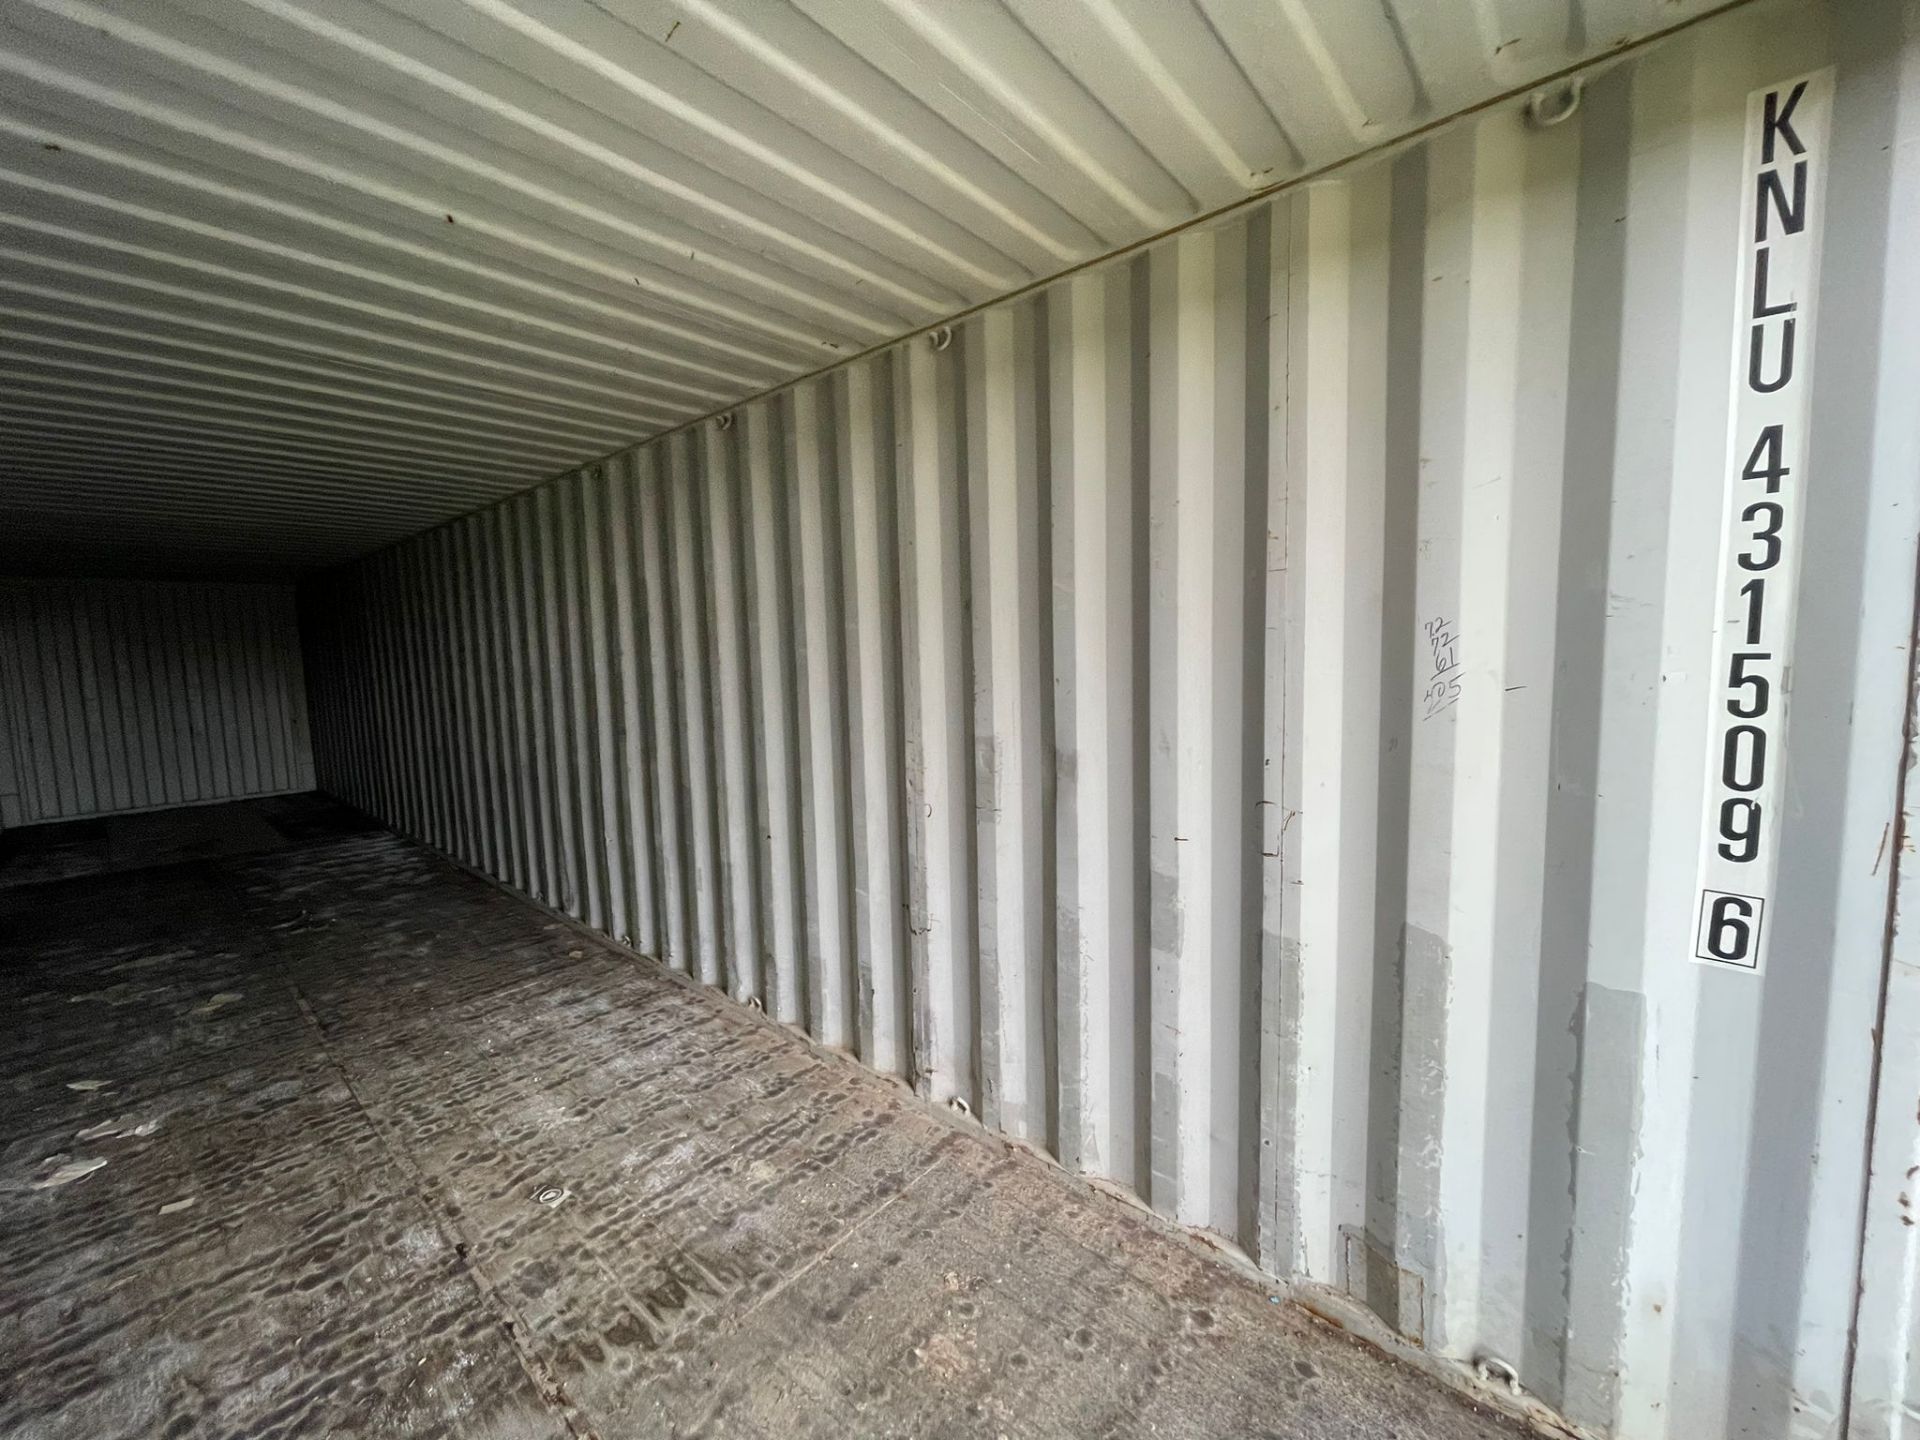 Shipping Container - ref KNLU4315096 - NO RESERVE (40’ GP - Standard) - Bild 2 aus 3